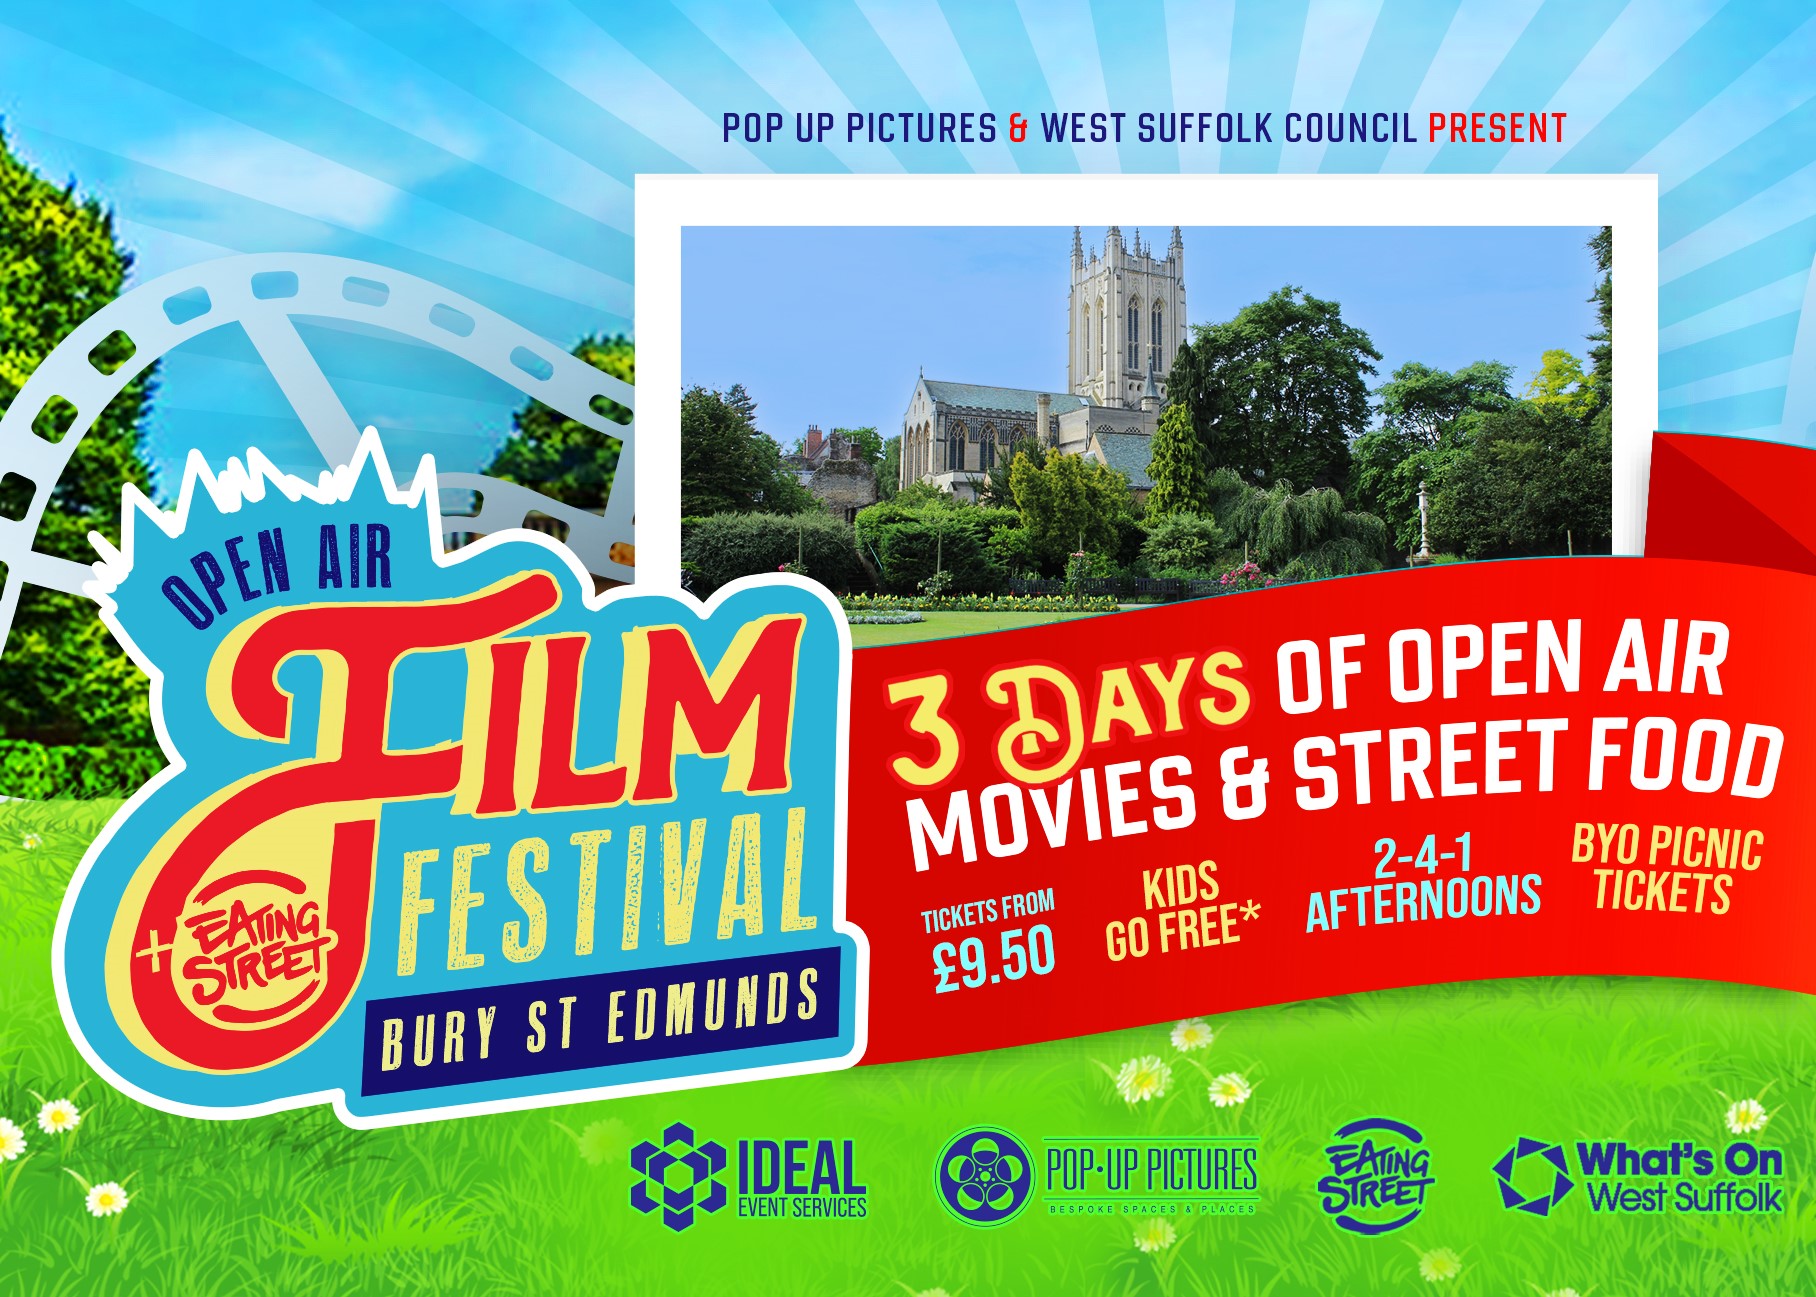 Open Air Film Festival - Bury St Edmunds